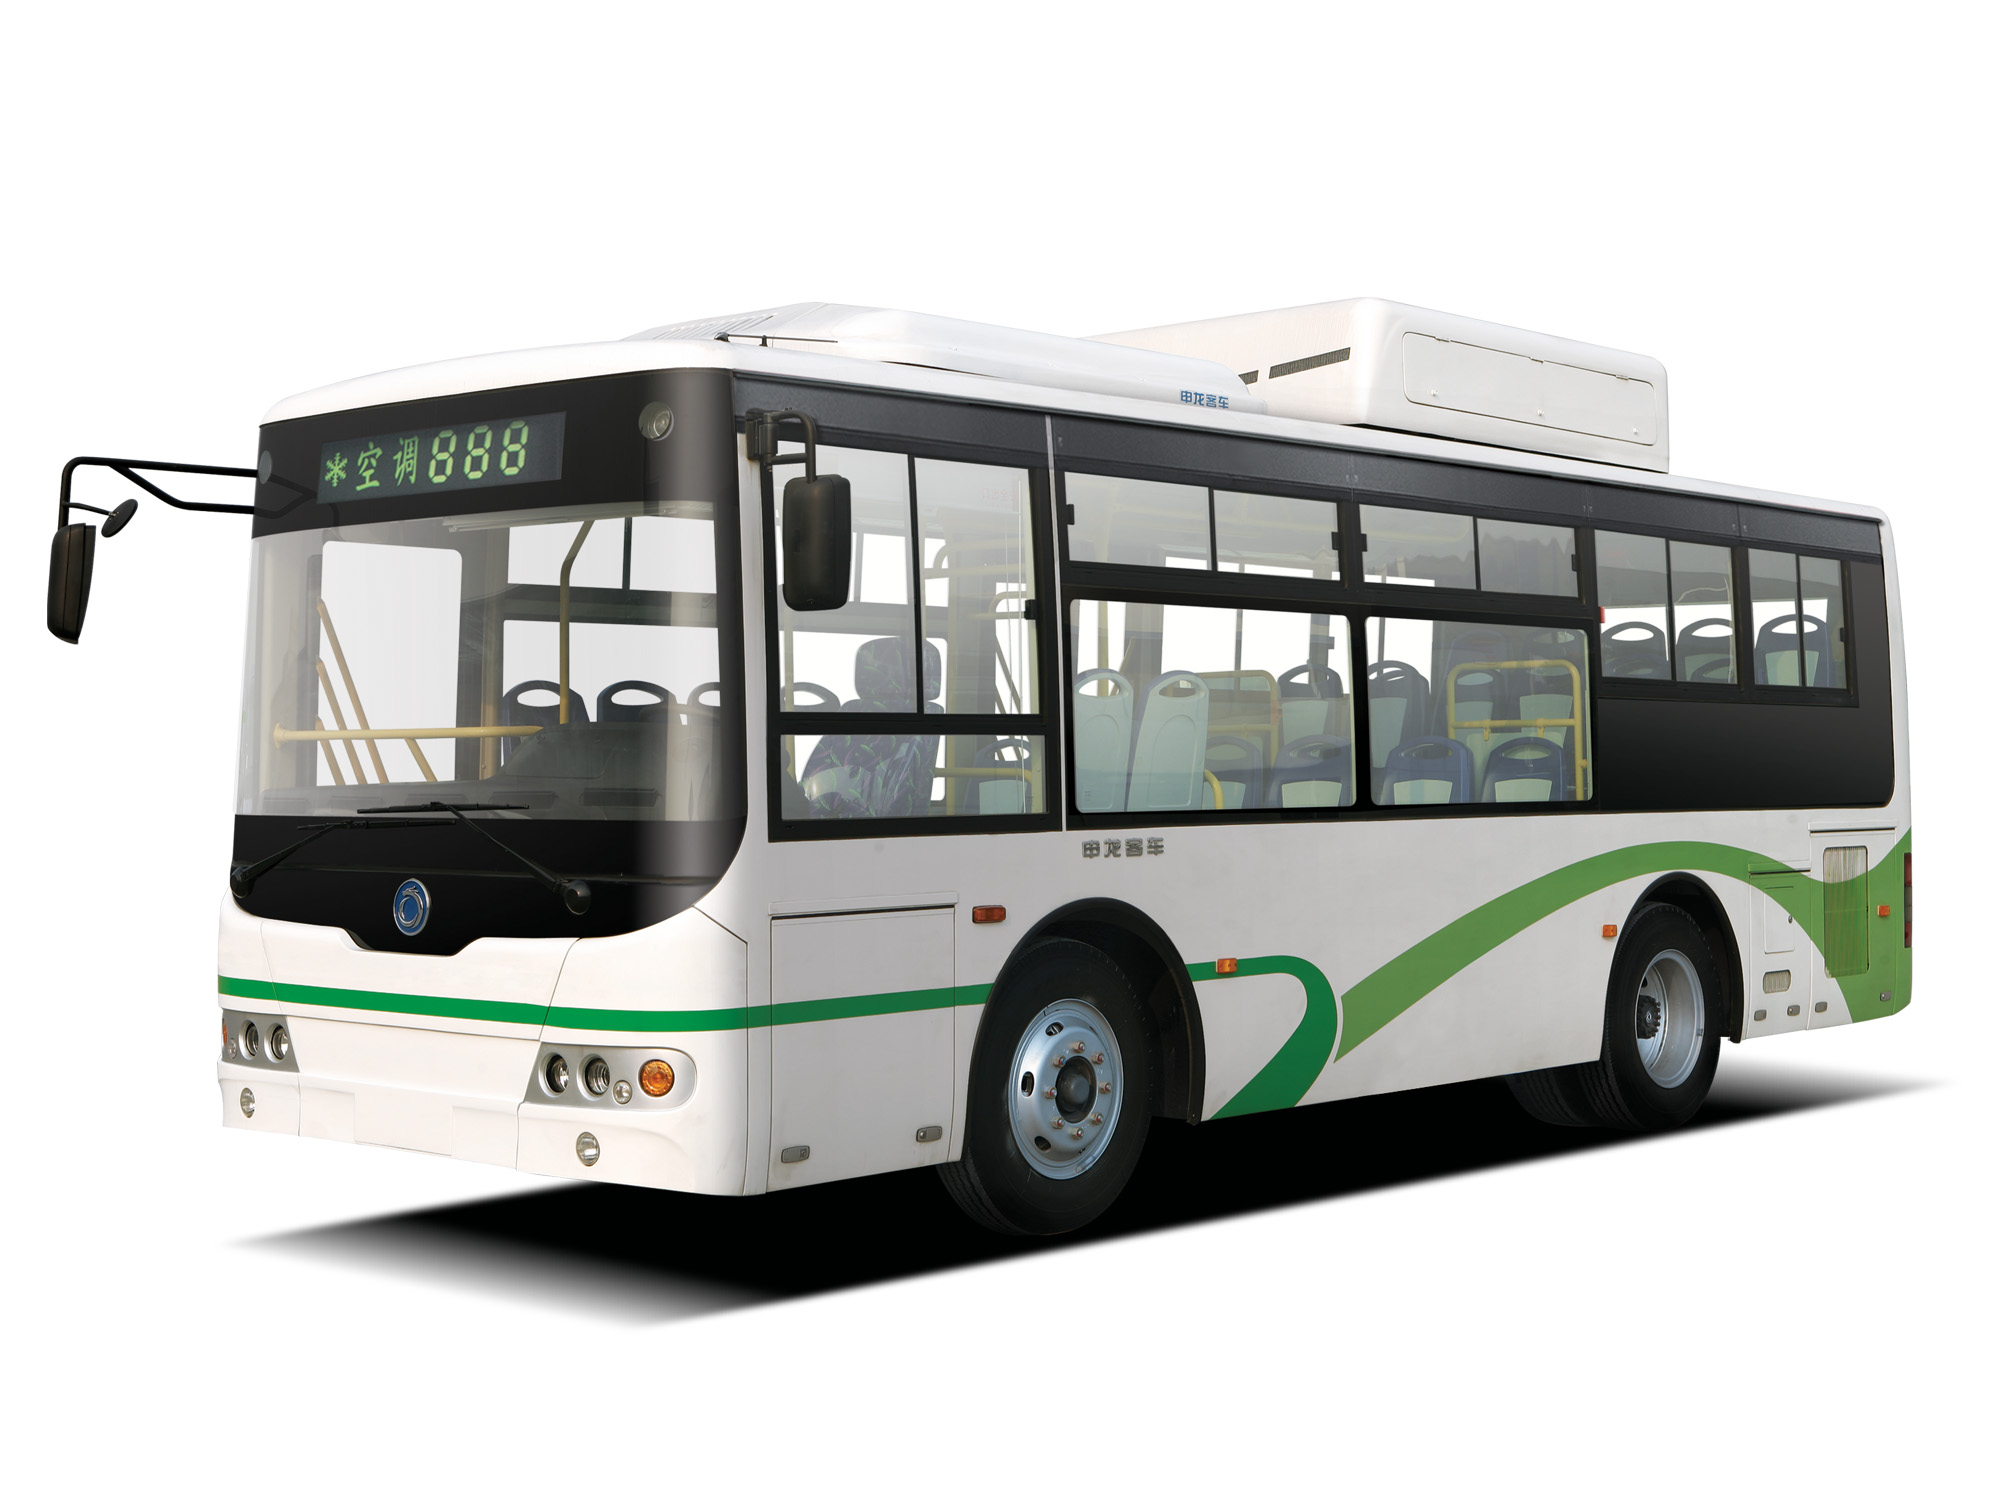 SLK6939天然气,9-10米,上海申龙客车有限公司,上海申龙客车有限公司-06